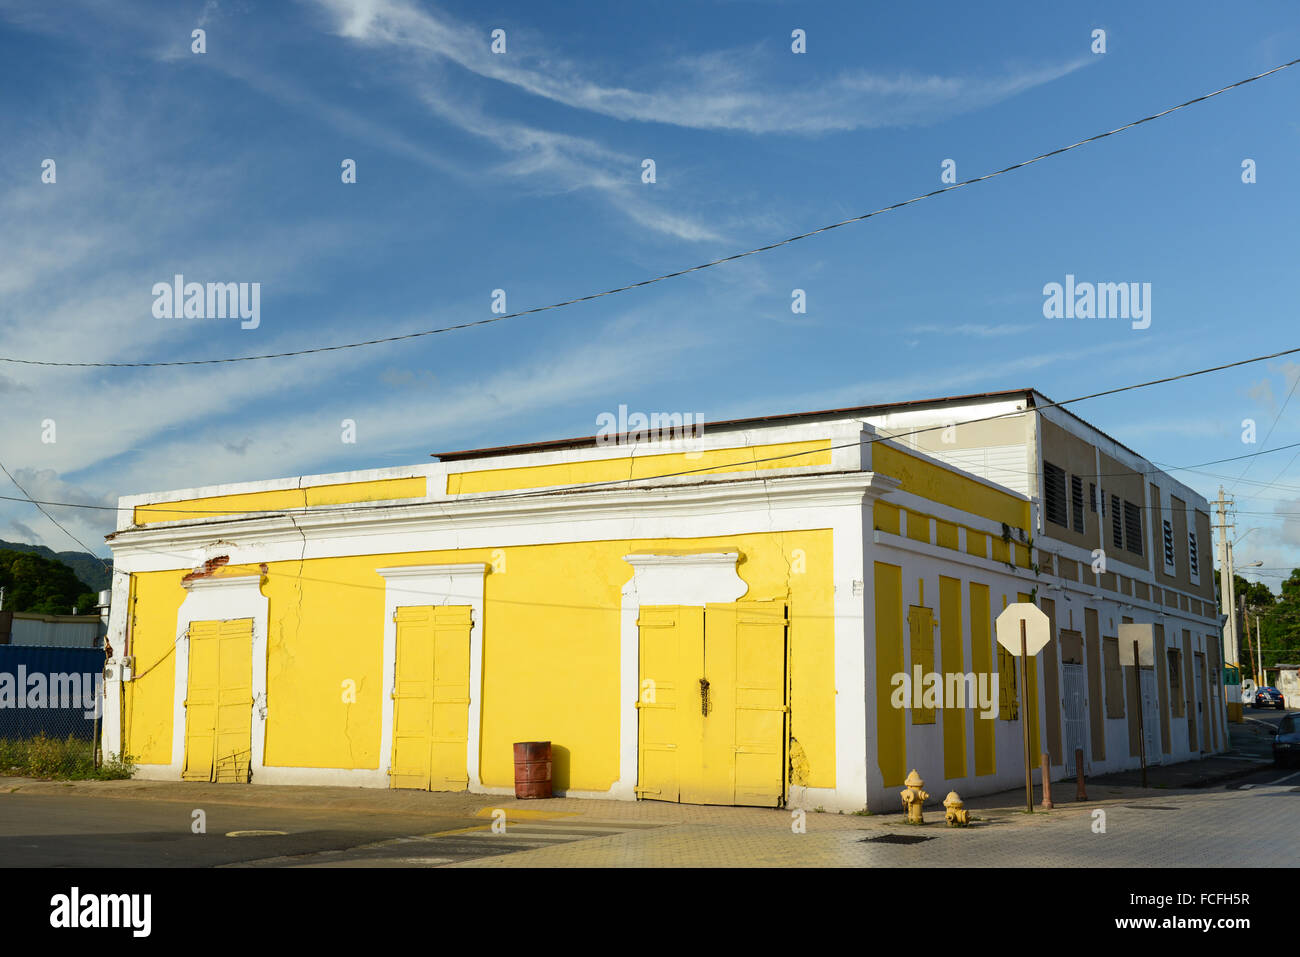 Geschlossene Geschäfte und Orte, die von ihren Besitzern zurückgelassen können überall gesehen werden.  Arroyo, Puerto Rico. Karibik-Insel. Stockfoto